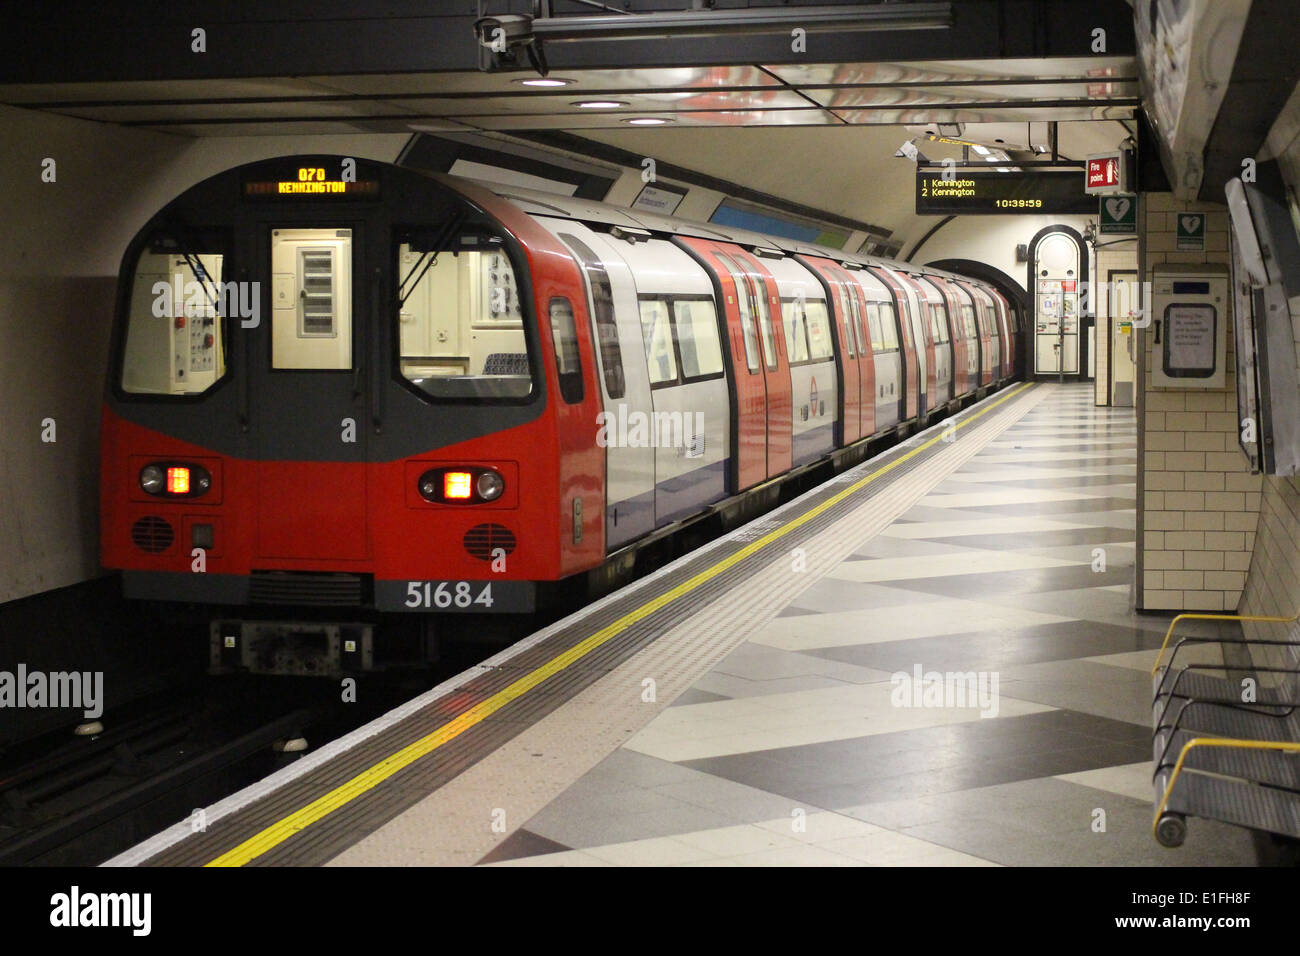 London Underground train at Waterloo station to Kennington Stock Photo